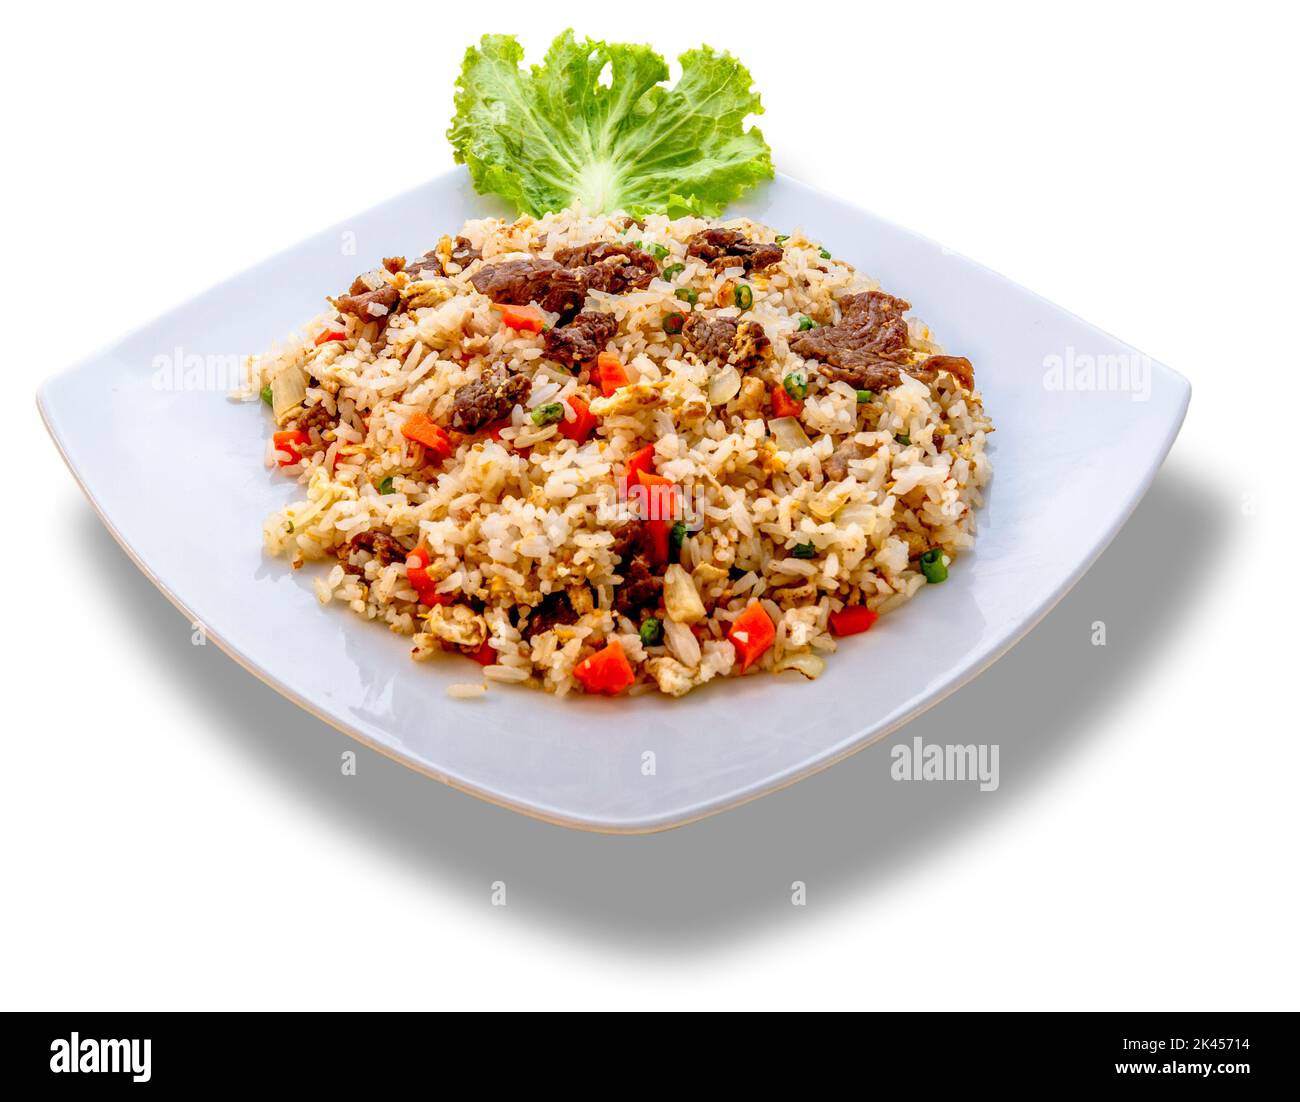 Ein weißer Teller mit gebratenem Khmer-Reis, garniert mit grünem Salat. Stockfoto